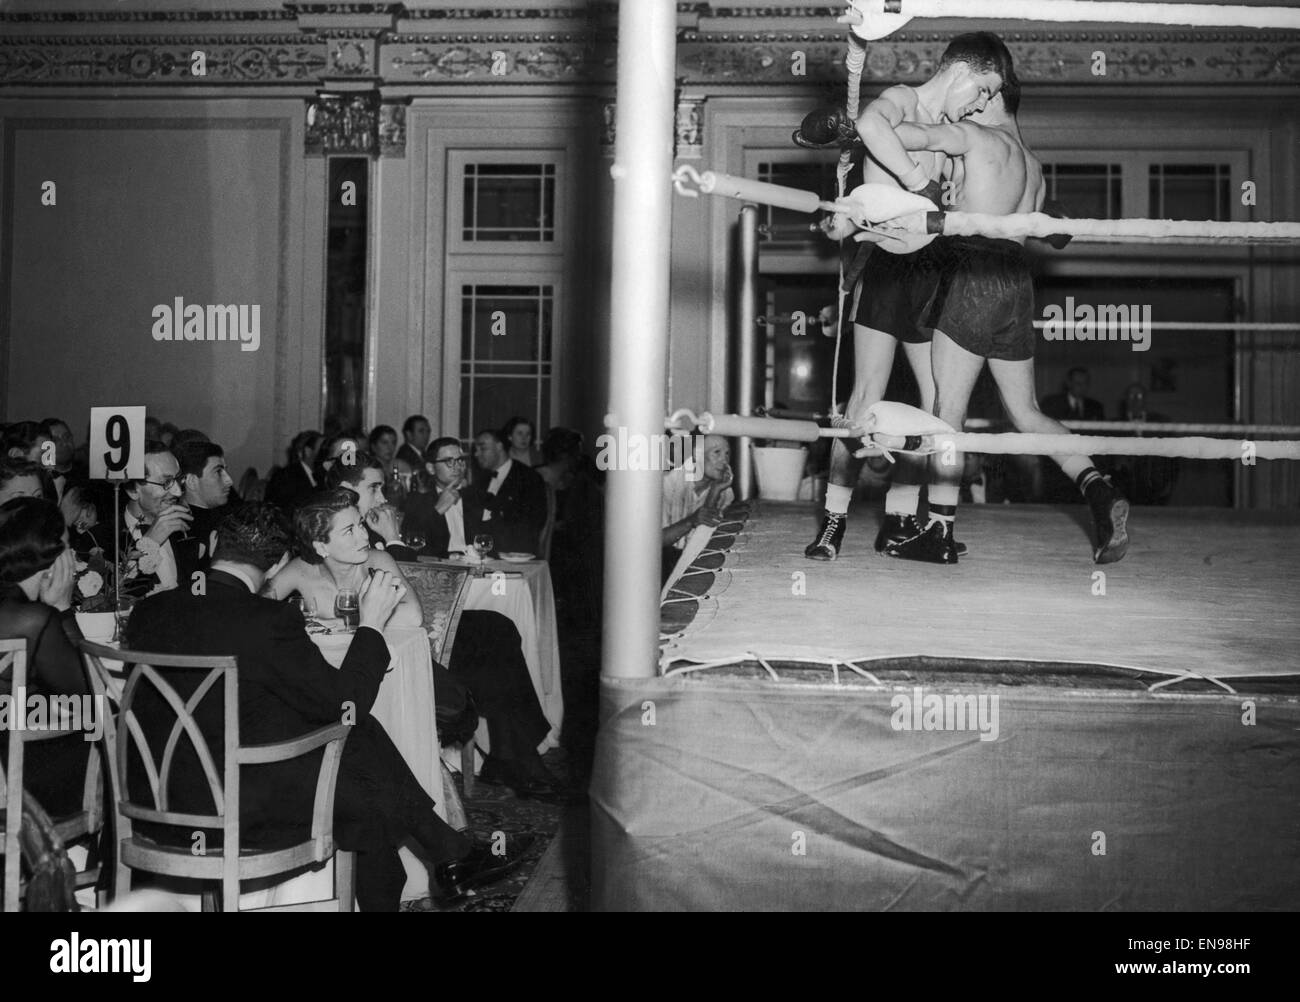 La National sporting club ladies' cena notte al Mayfair Hotel. Questa era la prima volta che le donne sono state presenti presso il club di cene per 60 anni. Sette round di pugilato ha avuto luogo nella sala da ballo. Il 24 settembre 1951. Foto Stock